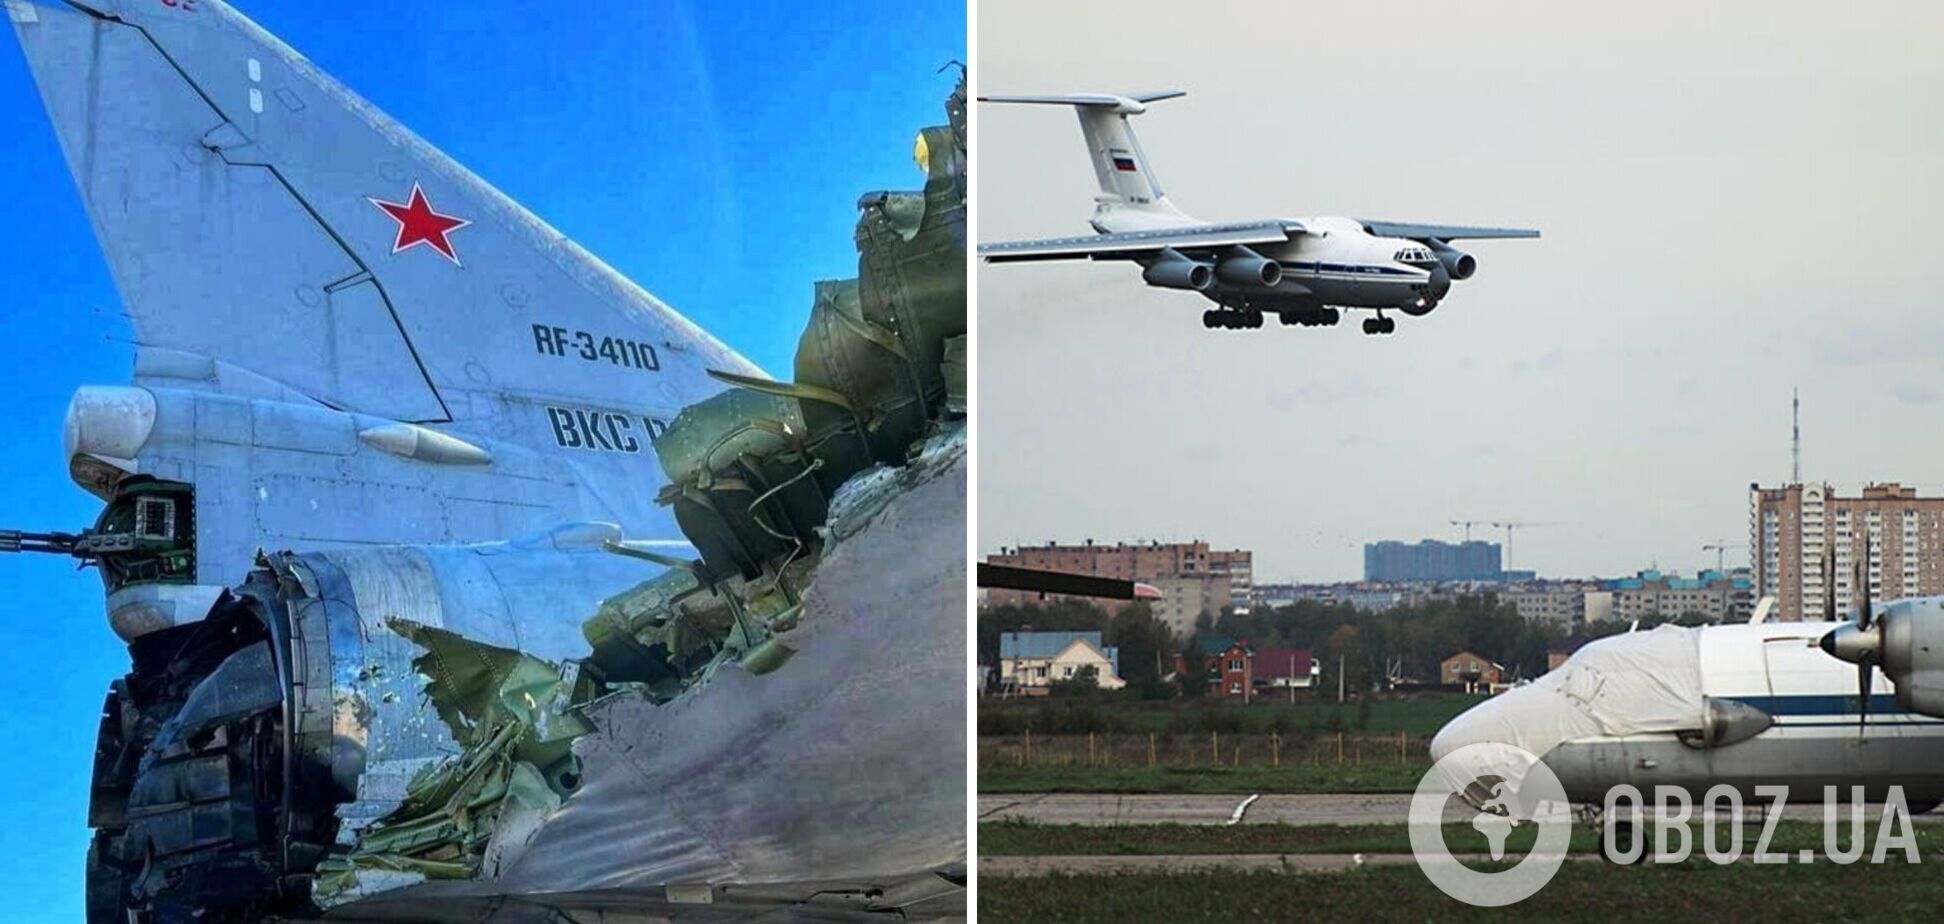 Появились первые фото российского бомбардировщика Ту-22М3 и топливозаправщика на аэродроме 'Дягилево' возле Рязани, который был поражен БПЛА